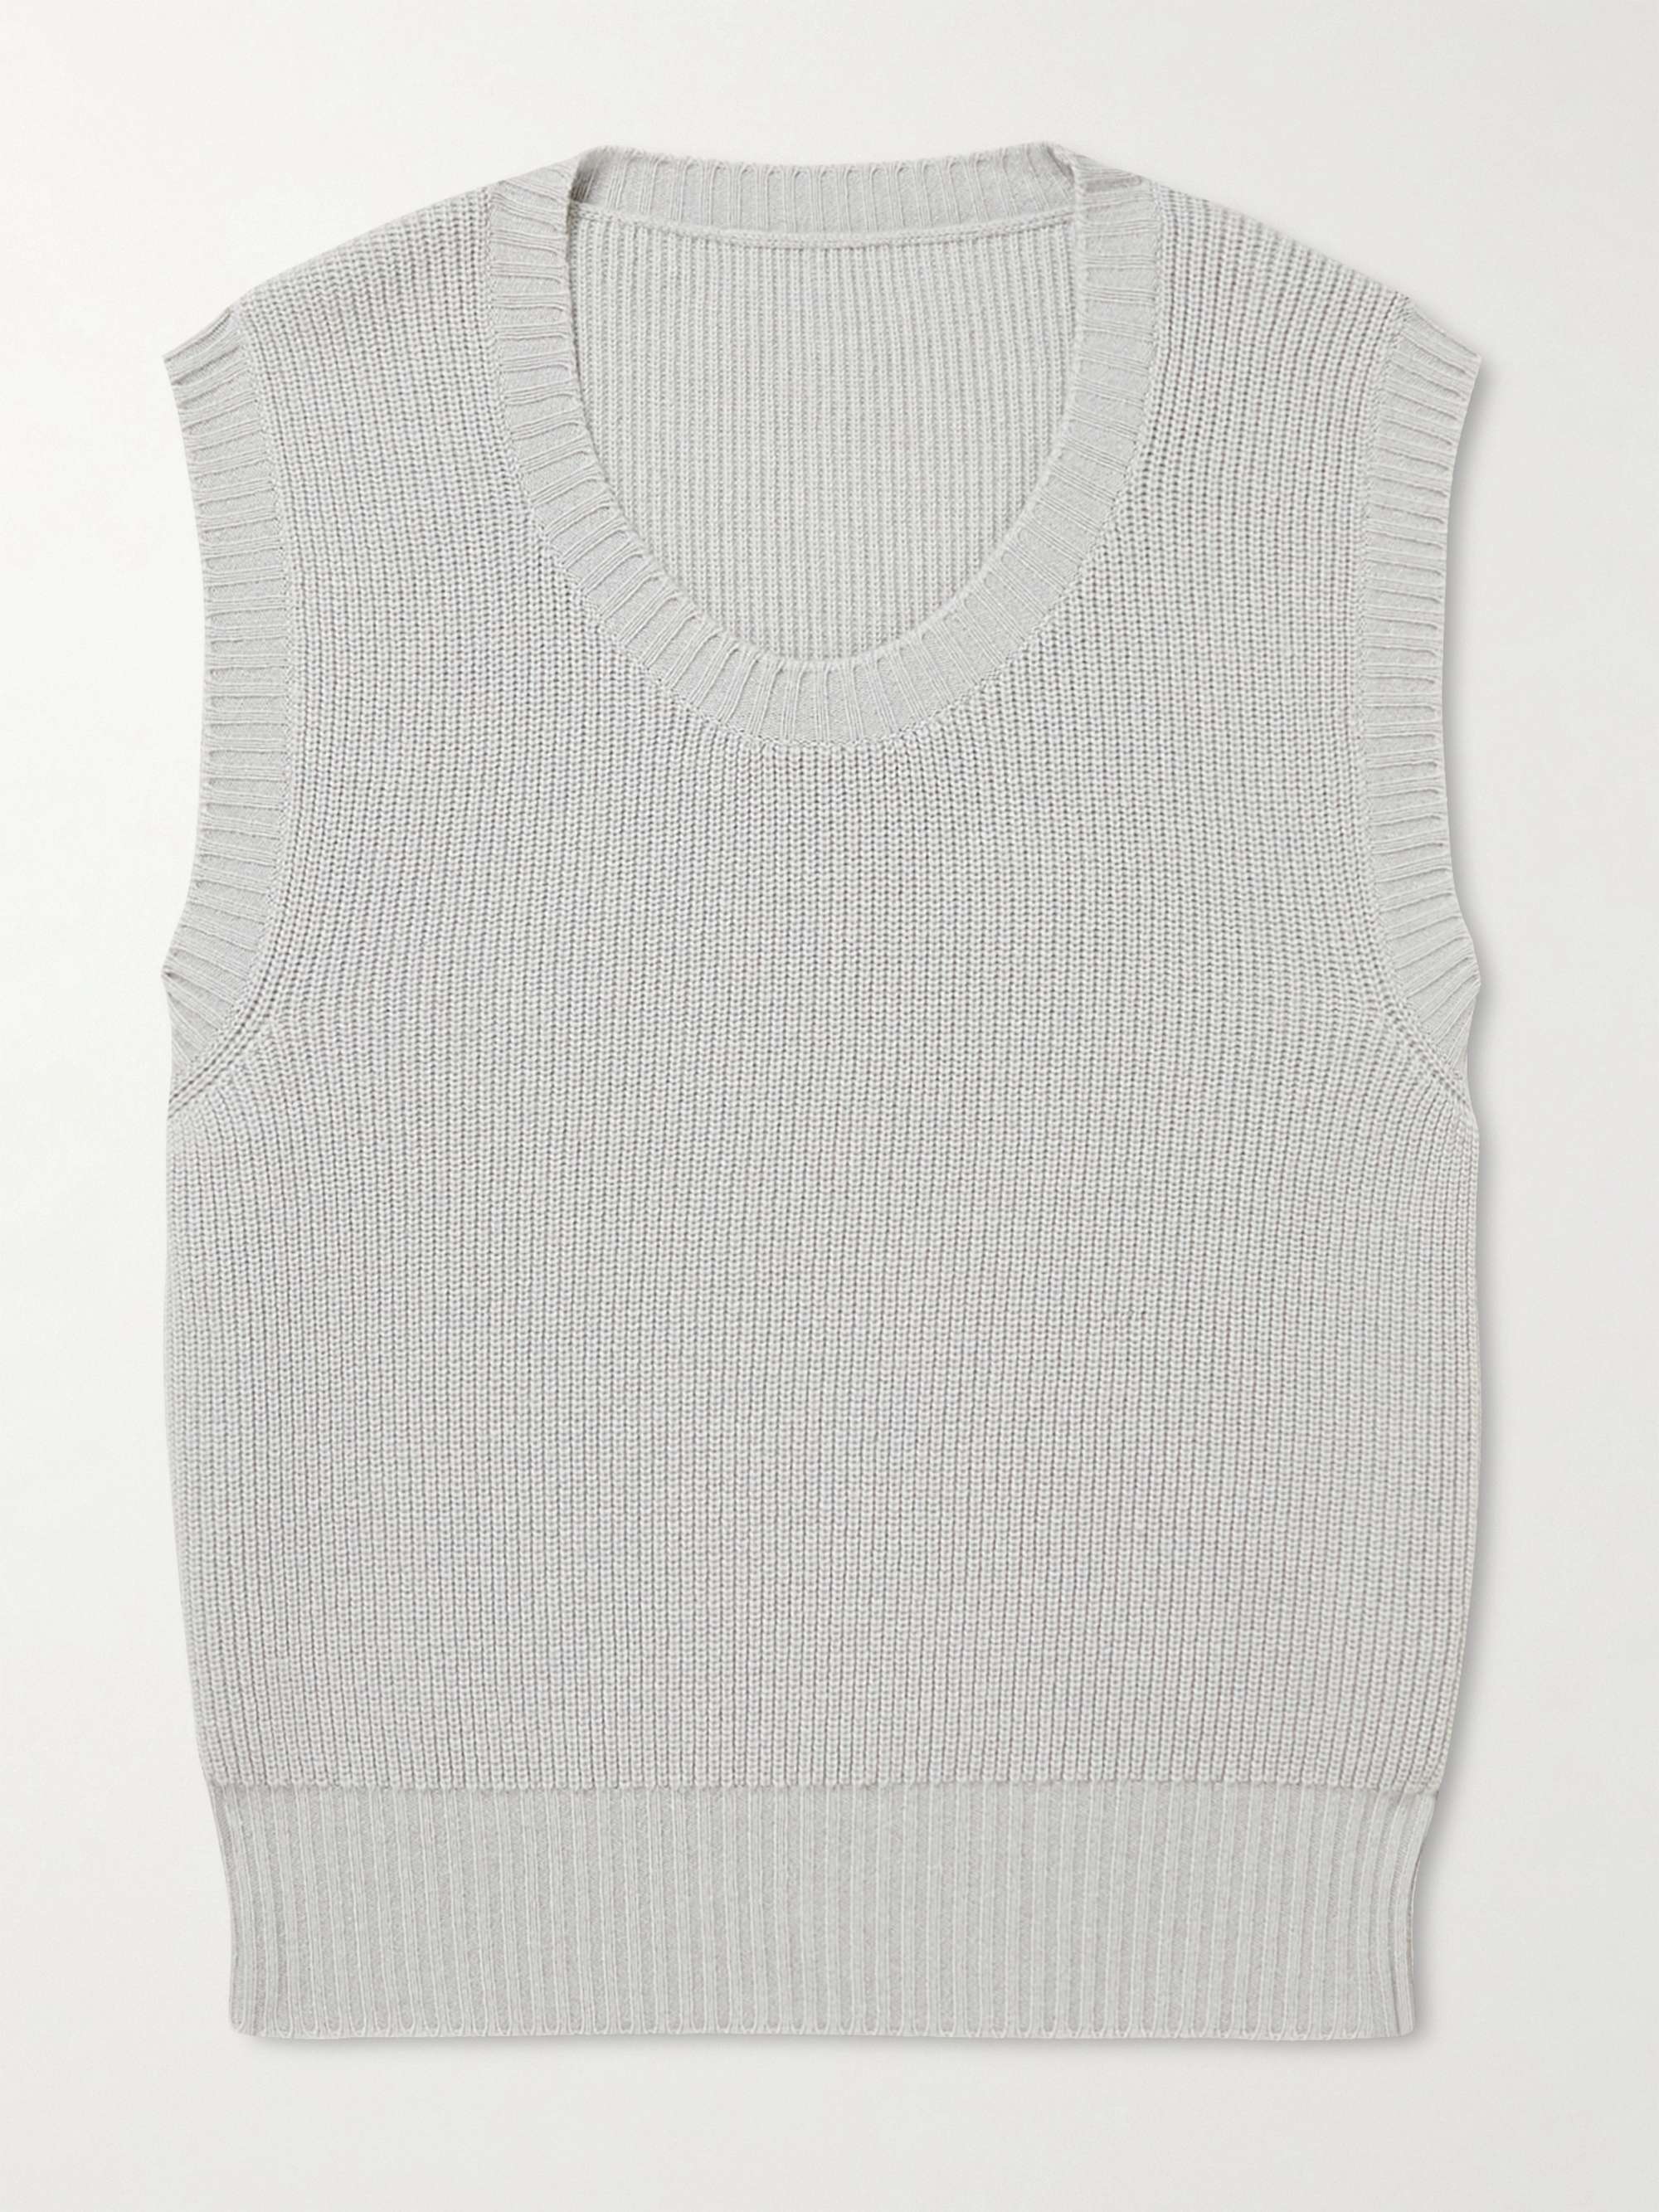 STÒFFA Ribbed Cashmere Sweater Vest for Men | MR PORTER